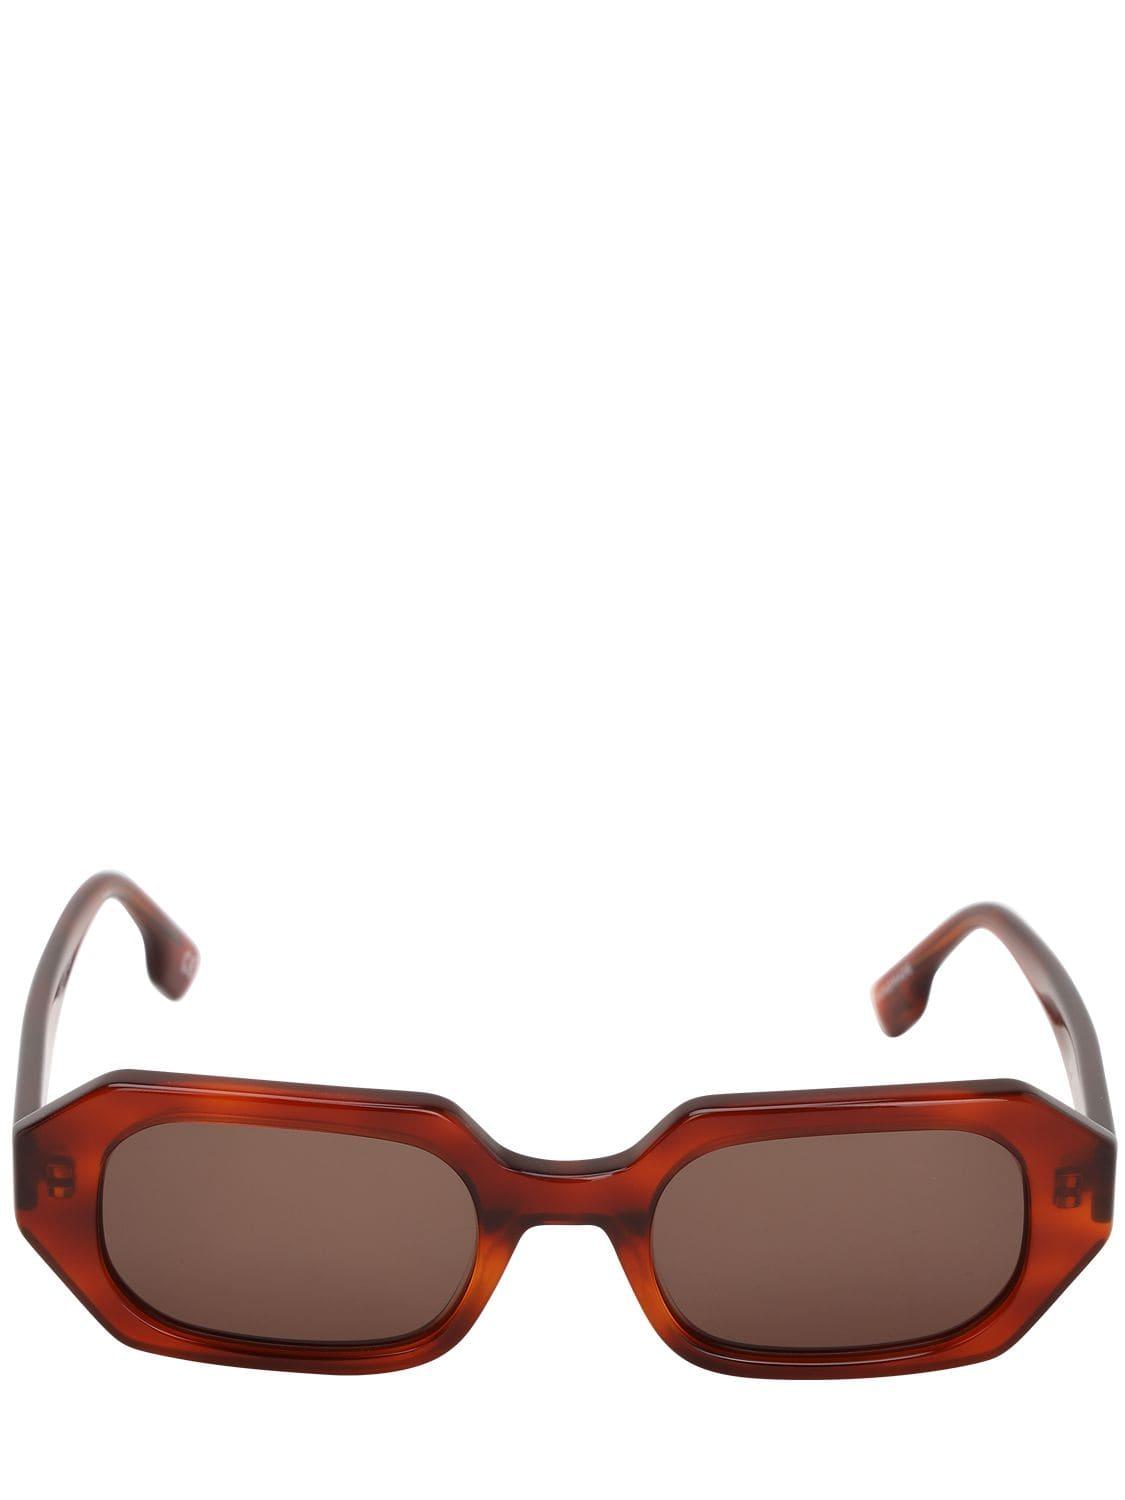 Le Specs La Dolce Vita Octagonal Sunglasses in Brown - Lyst